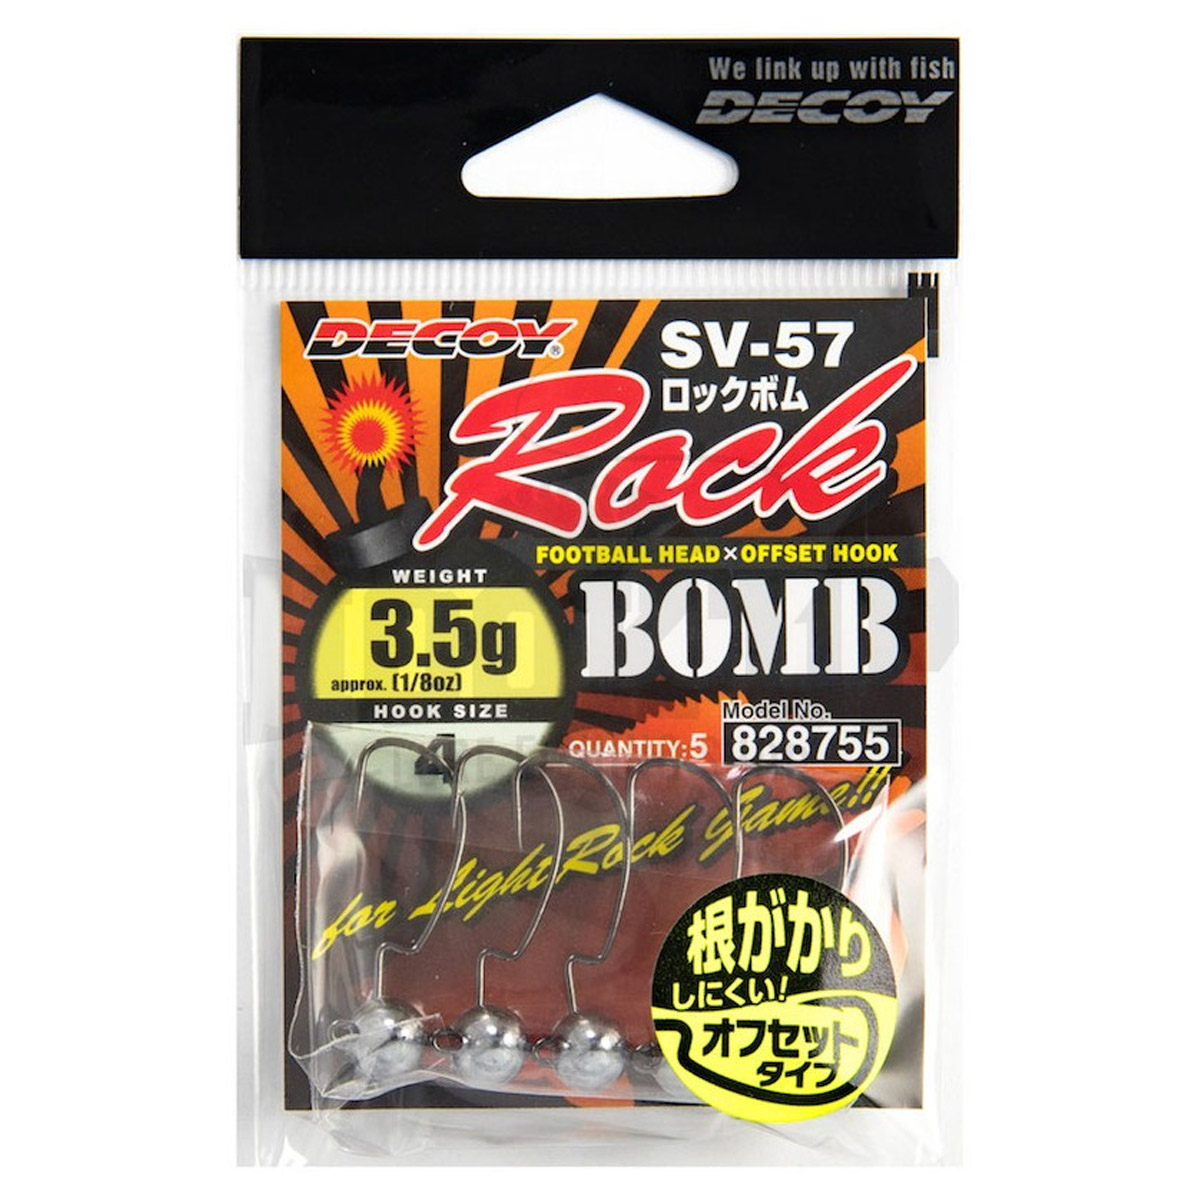 Decoy SV-57 Rock Bomb